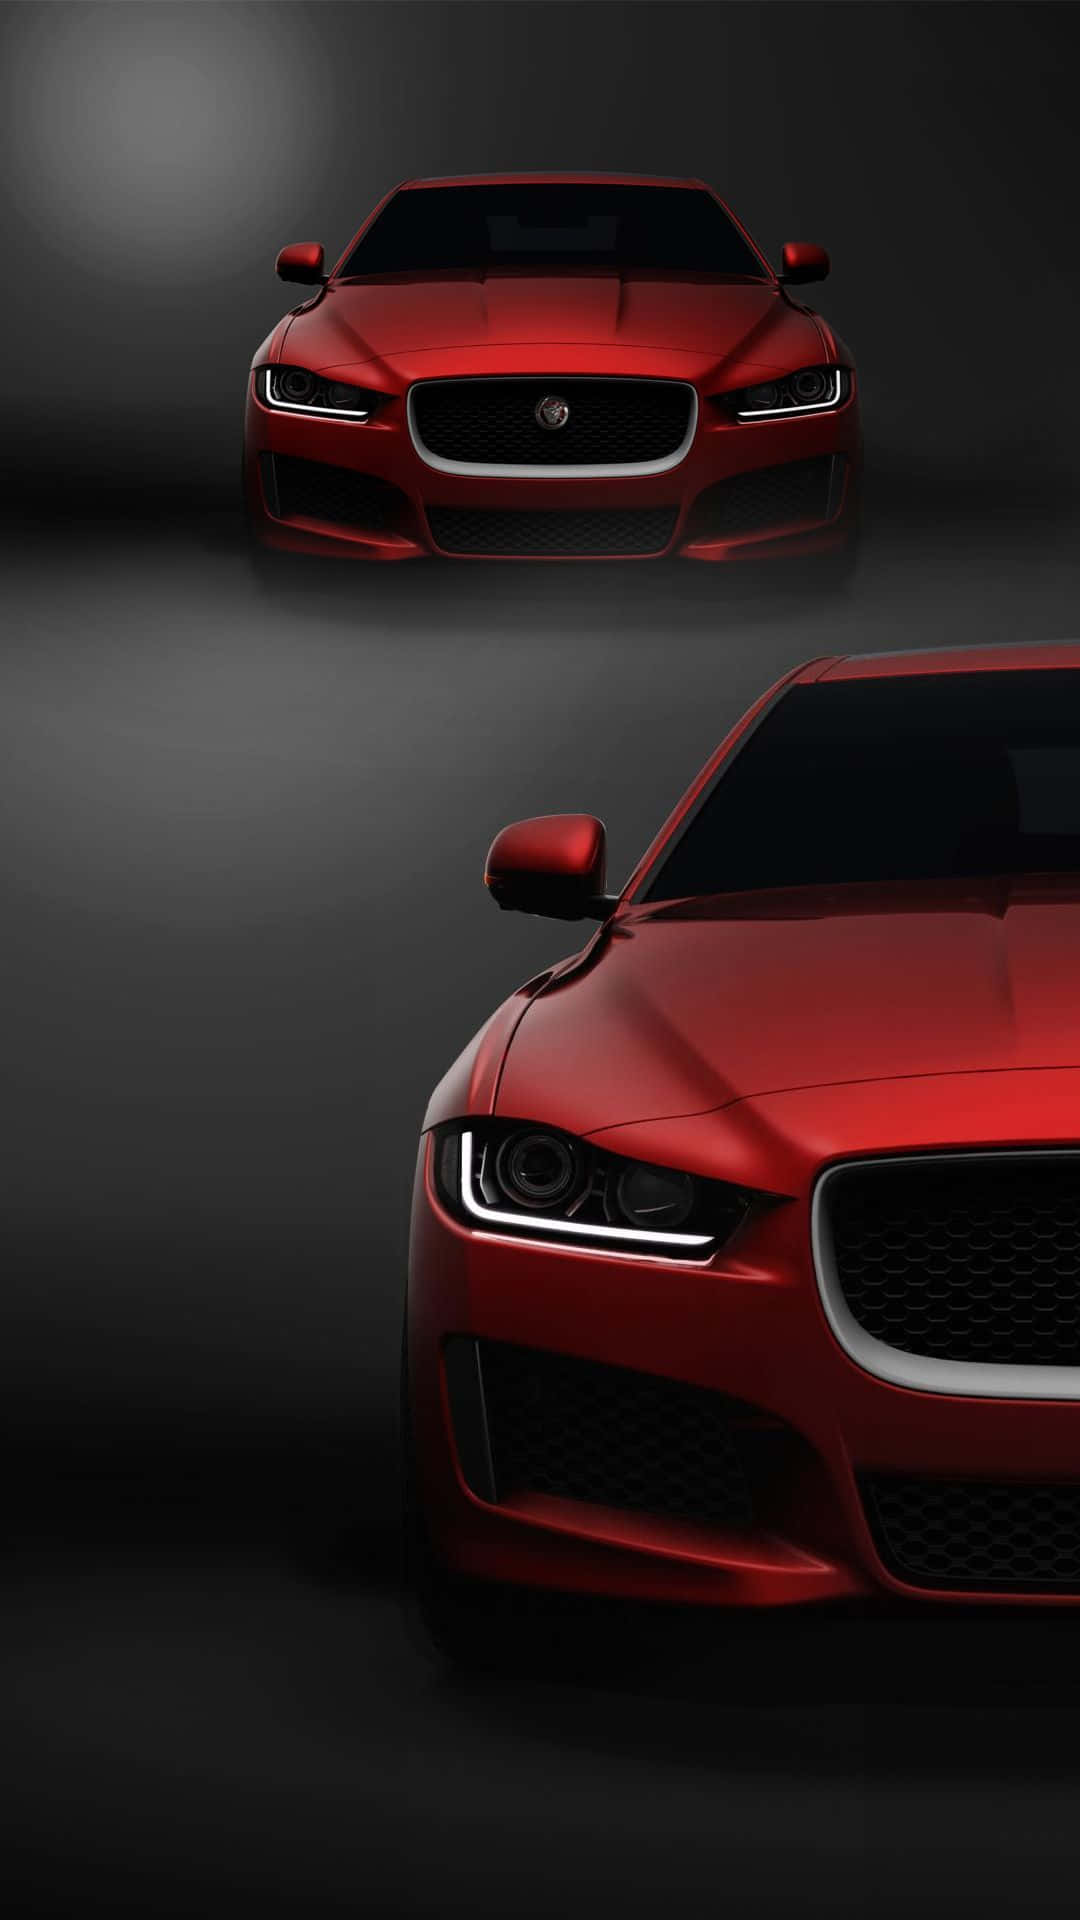 Tapetför Dator Eller Mobil: Röd Jaguar Xf Bil För Android. Wallpaper